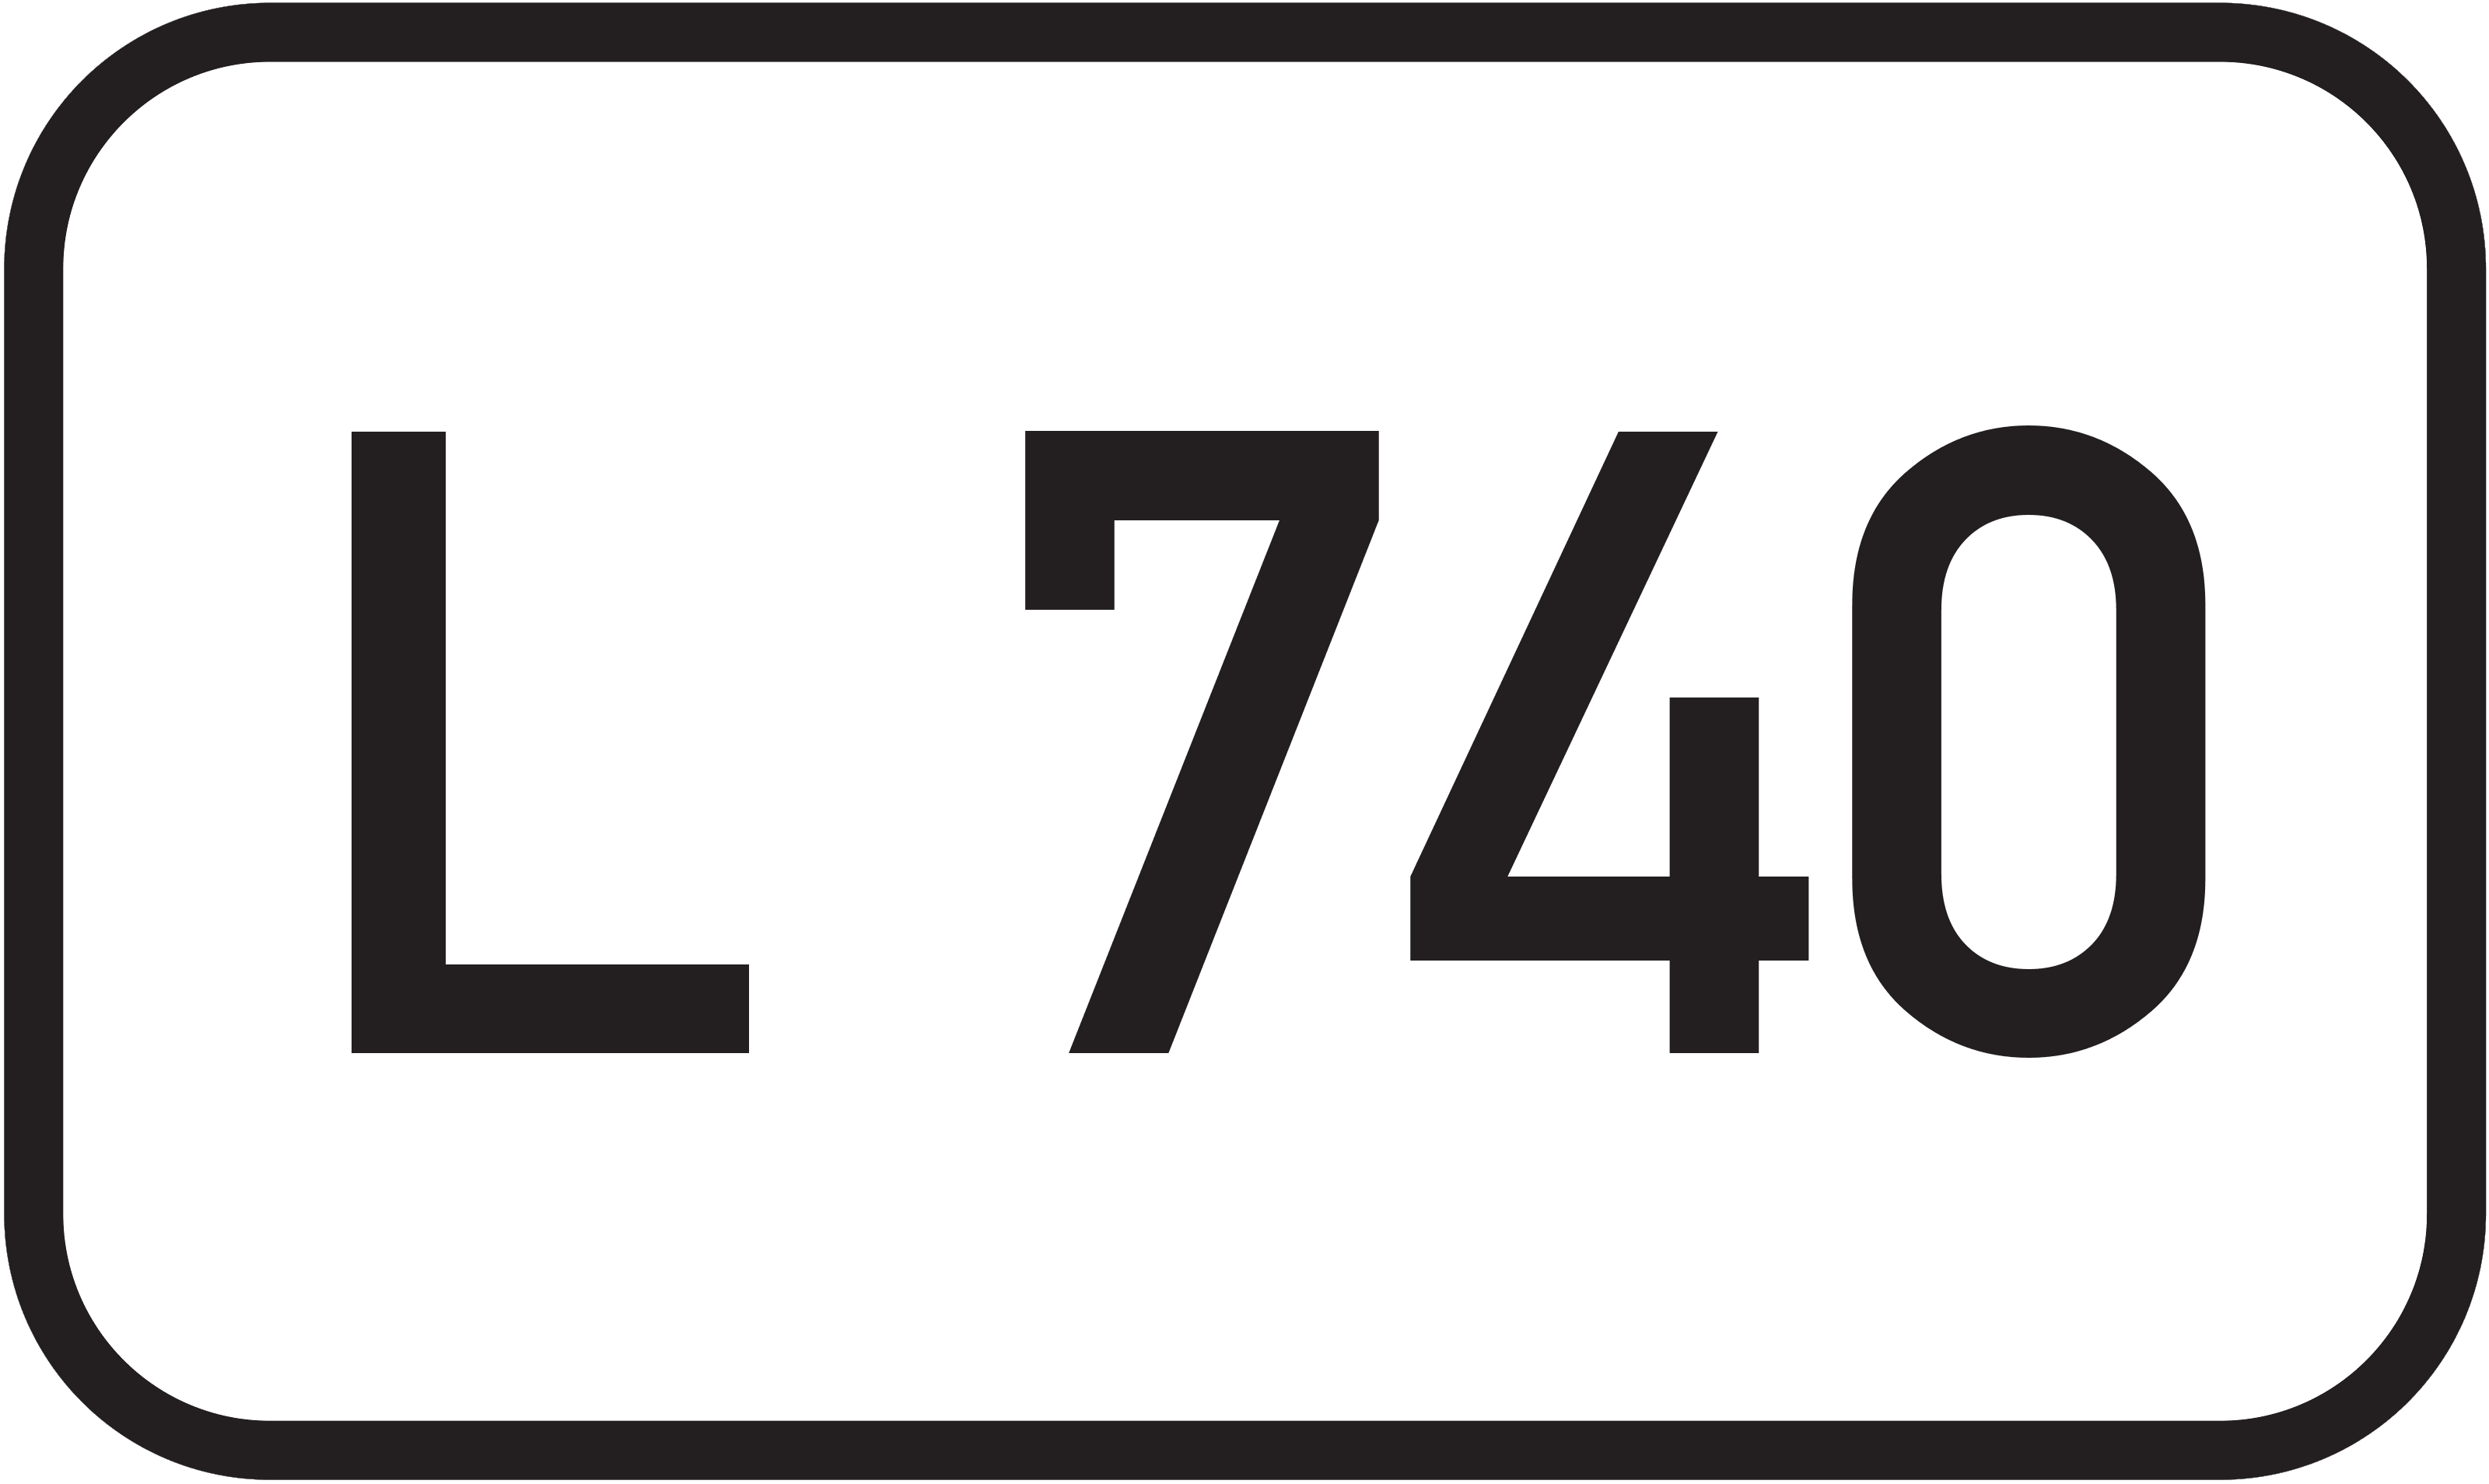 Landesstraße L 740